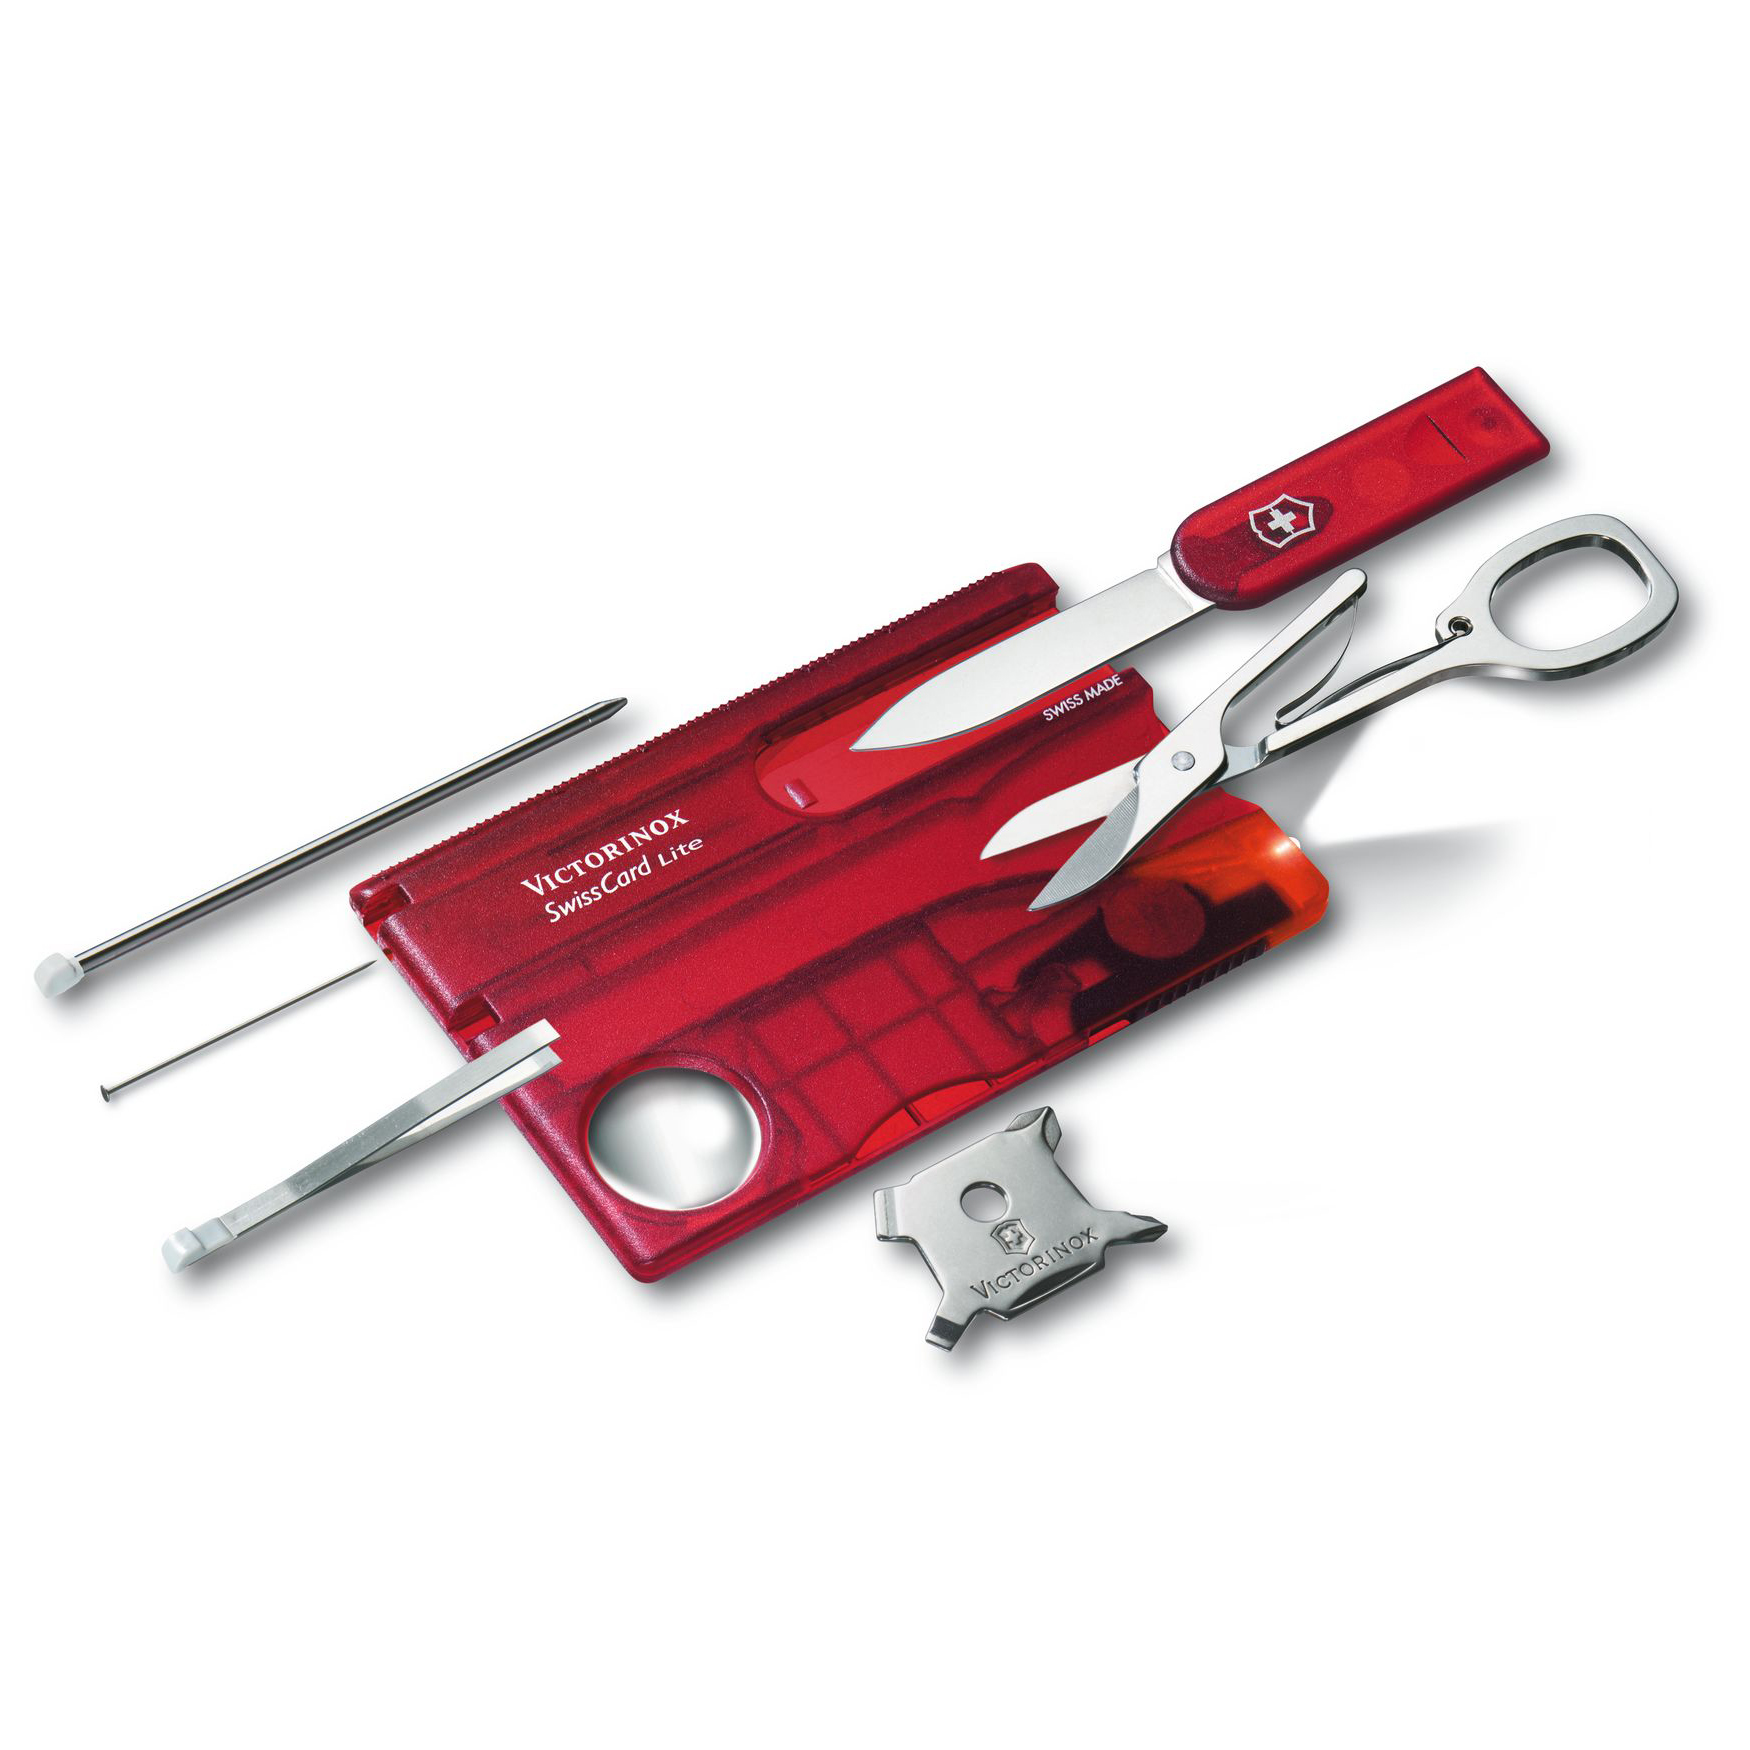 Швейцарская карта Victorinox SwissCard Lite, сталь X50CrMoV15, рукоять ABS-пластик, полупрозрачный красный от Ножиков